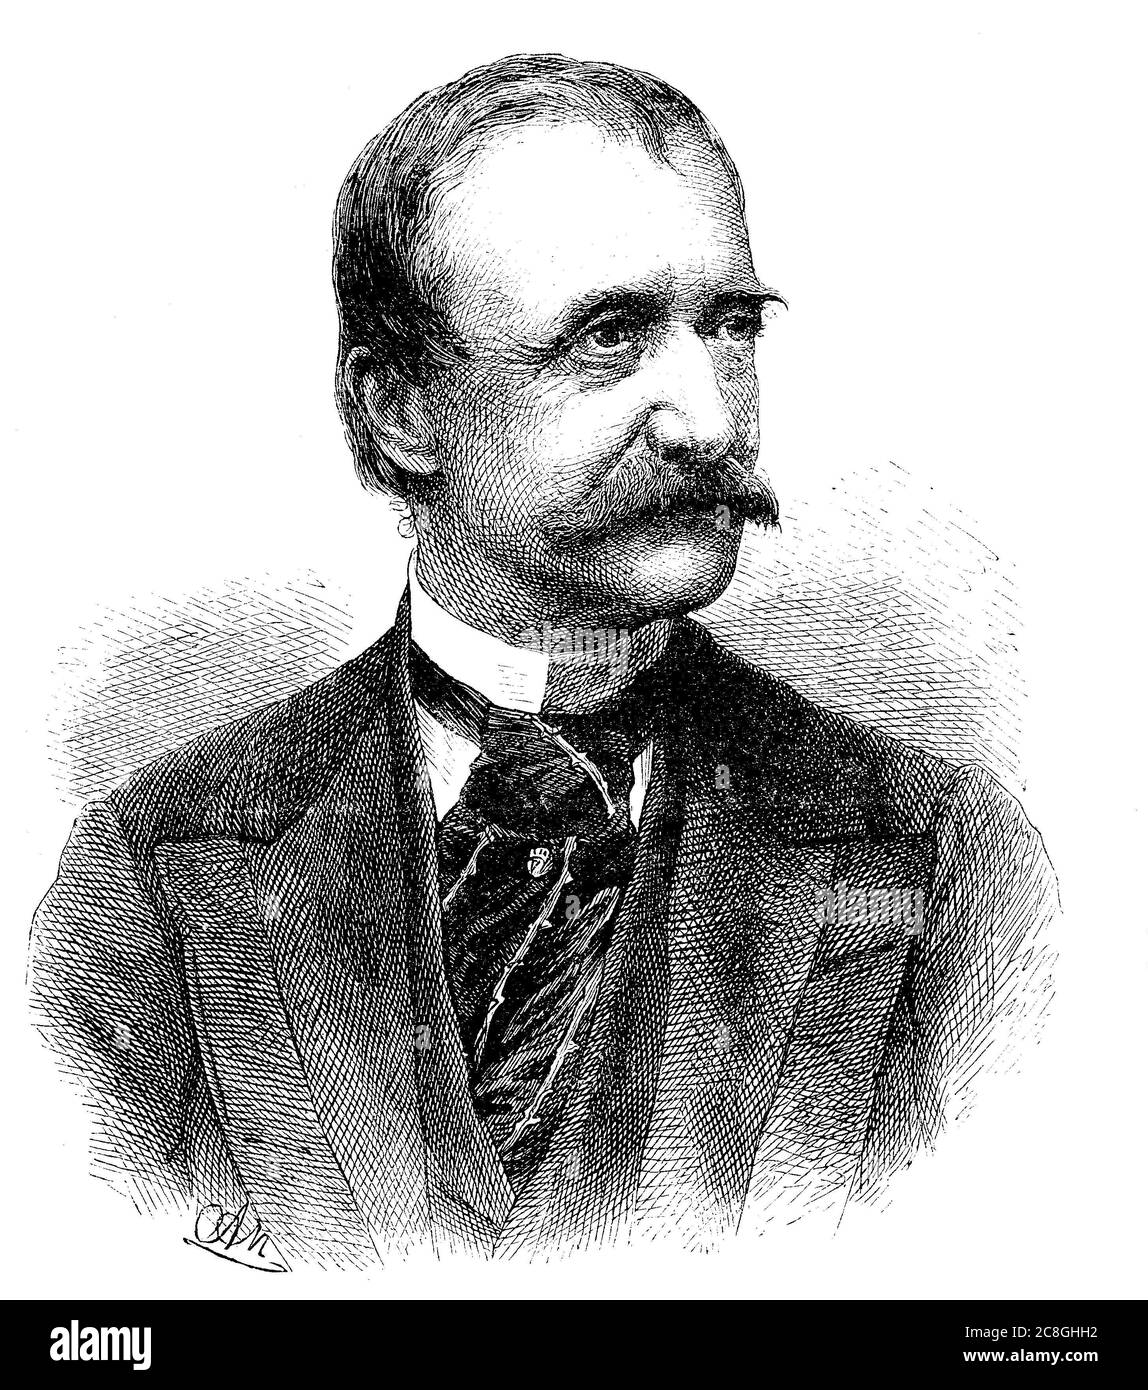 Wilhelm Freiherr von Engerth, 1814-1884, architecte et ingénieur autrichien, connu pour être le concepteur de la première locomotive de montagne pratique Banque D'Images